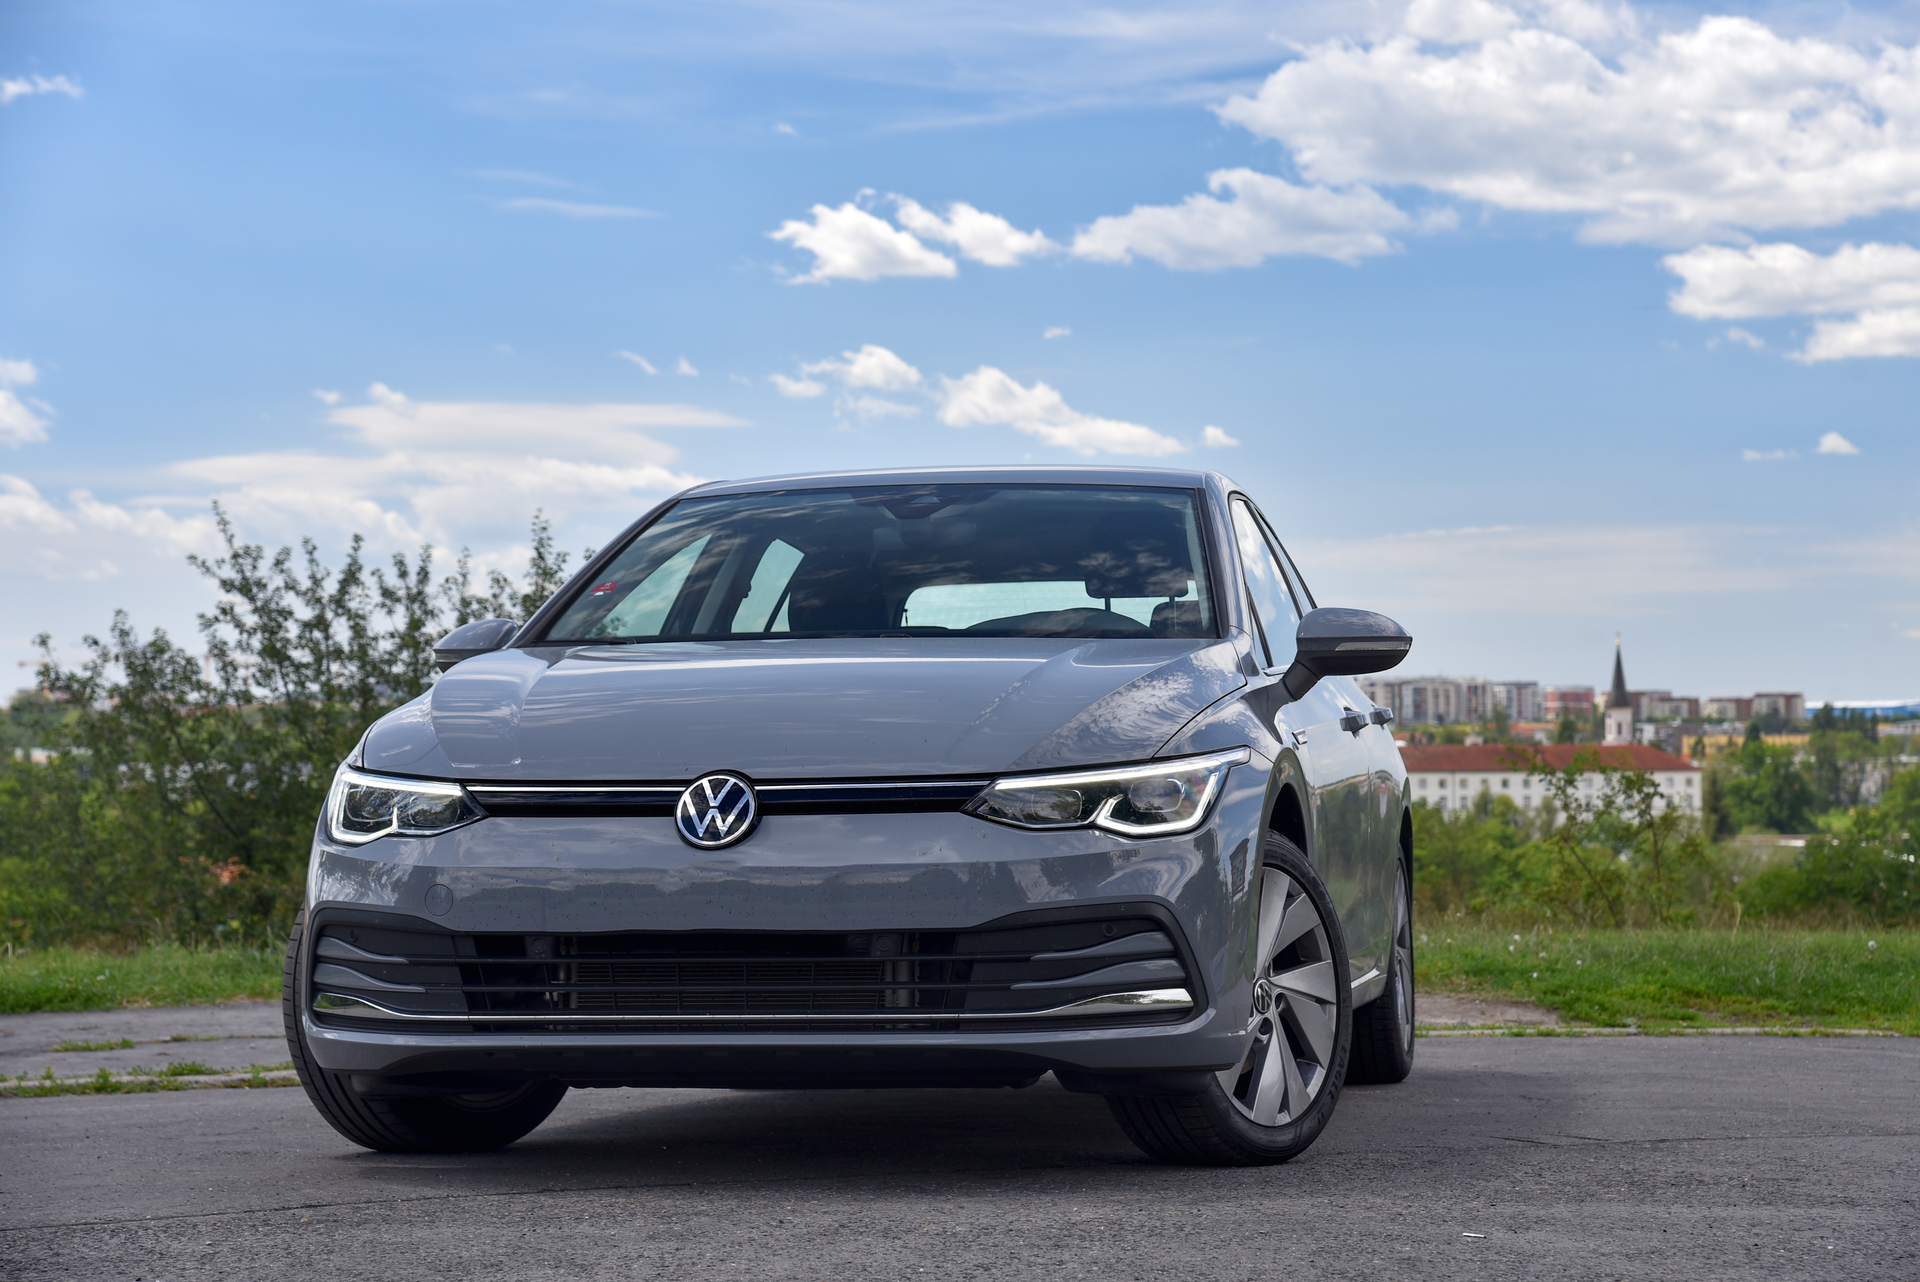 VW Golf bílaleigubíll á Íslandi, útvegaður af Go Car Rental